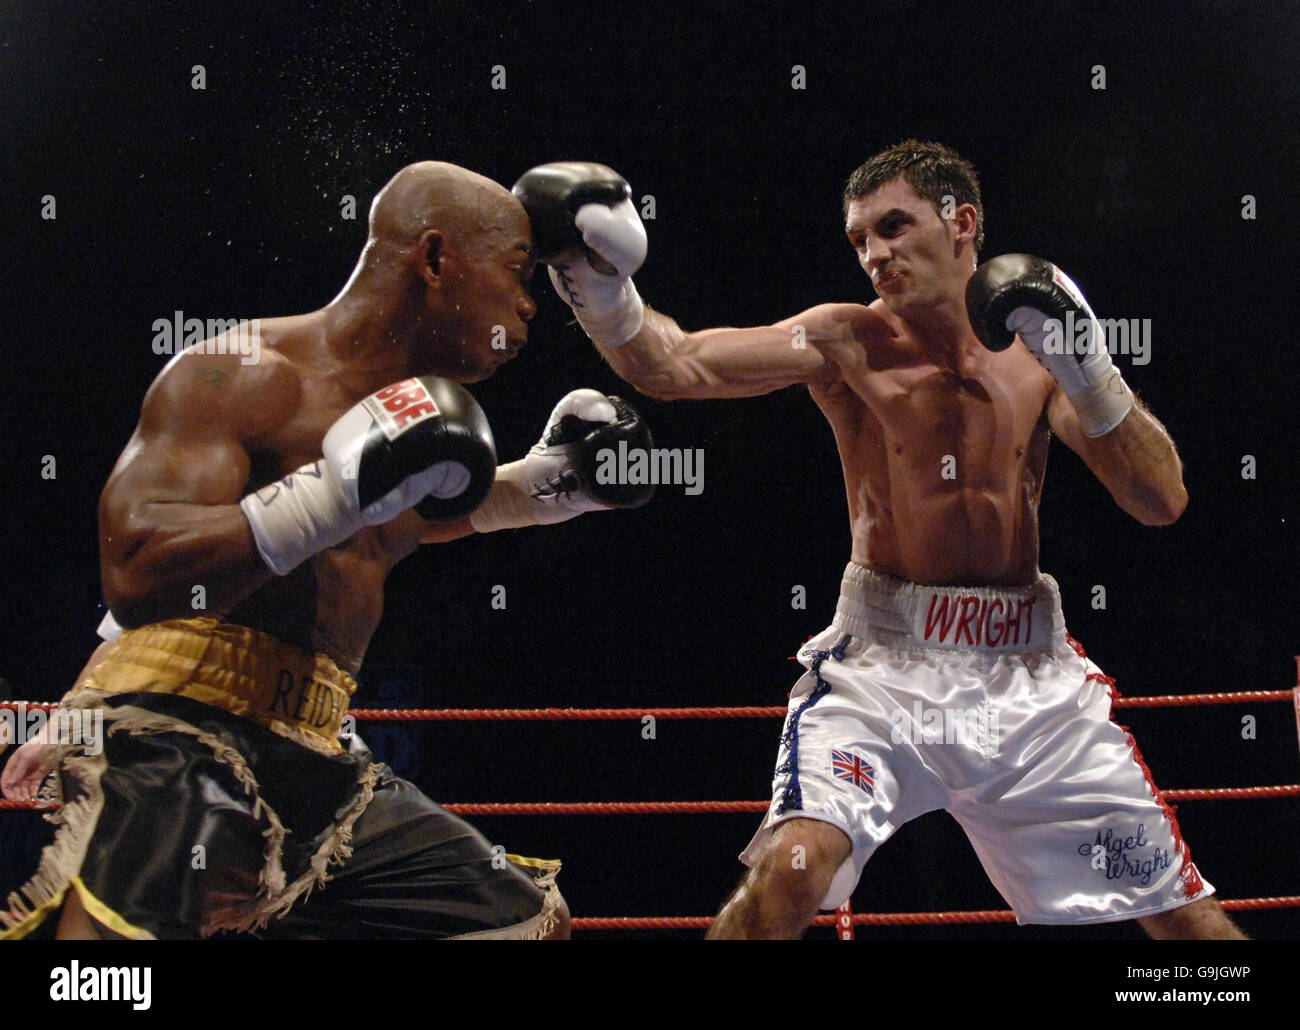 Boxe - jeu de poids-lourd léger anglais - Gary Reid contre Nigel Wright -  Kelvin Hall.Nigel Wright (à droite) lance un coup de poing à Gary Reid  pendant le combat anglais du